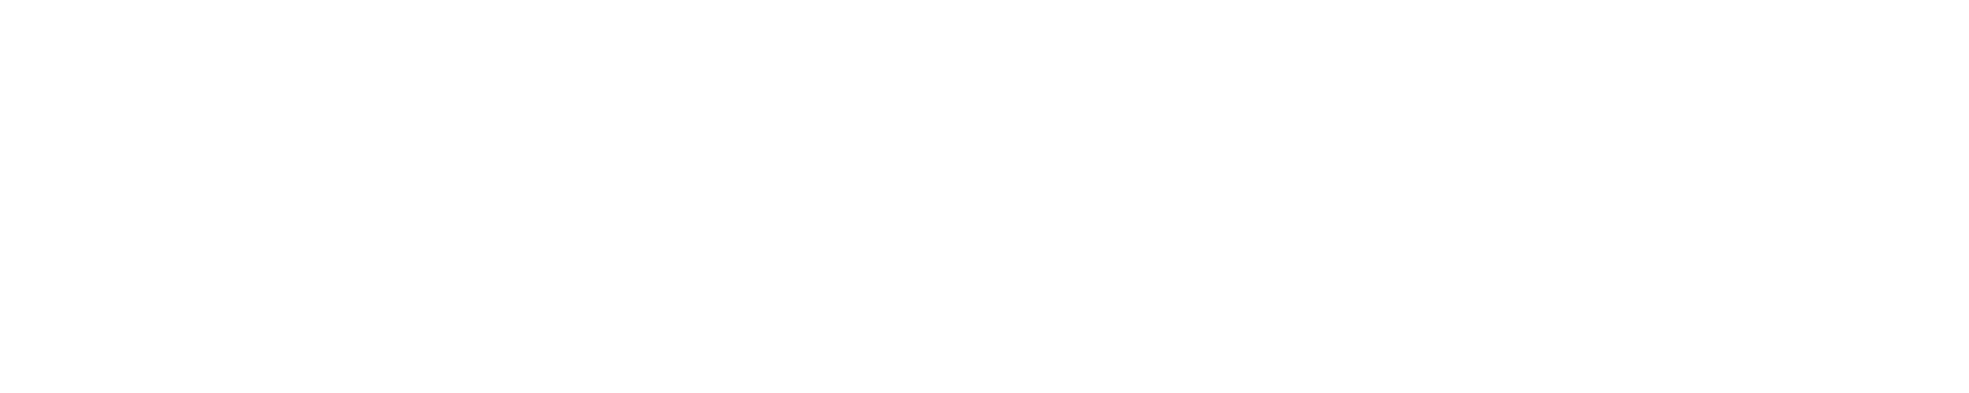 LPK-logo-bigWT.png